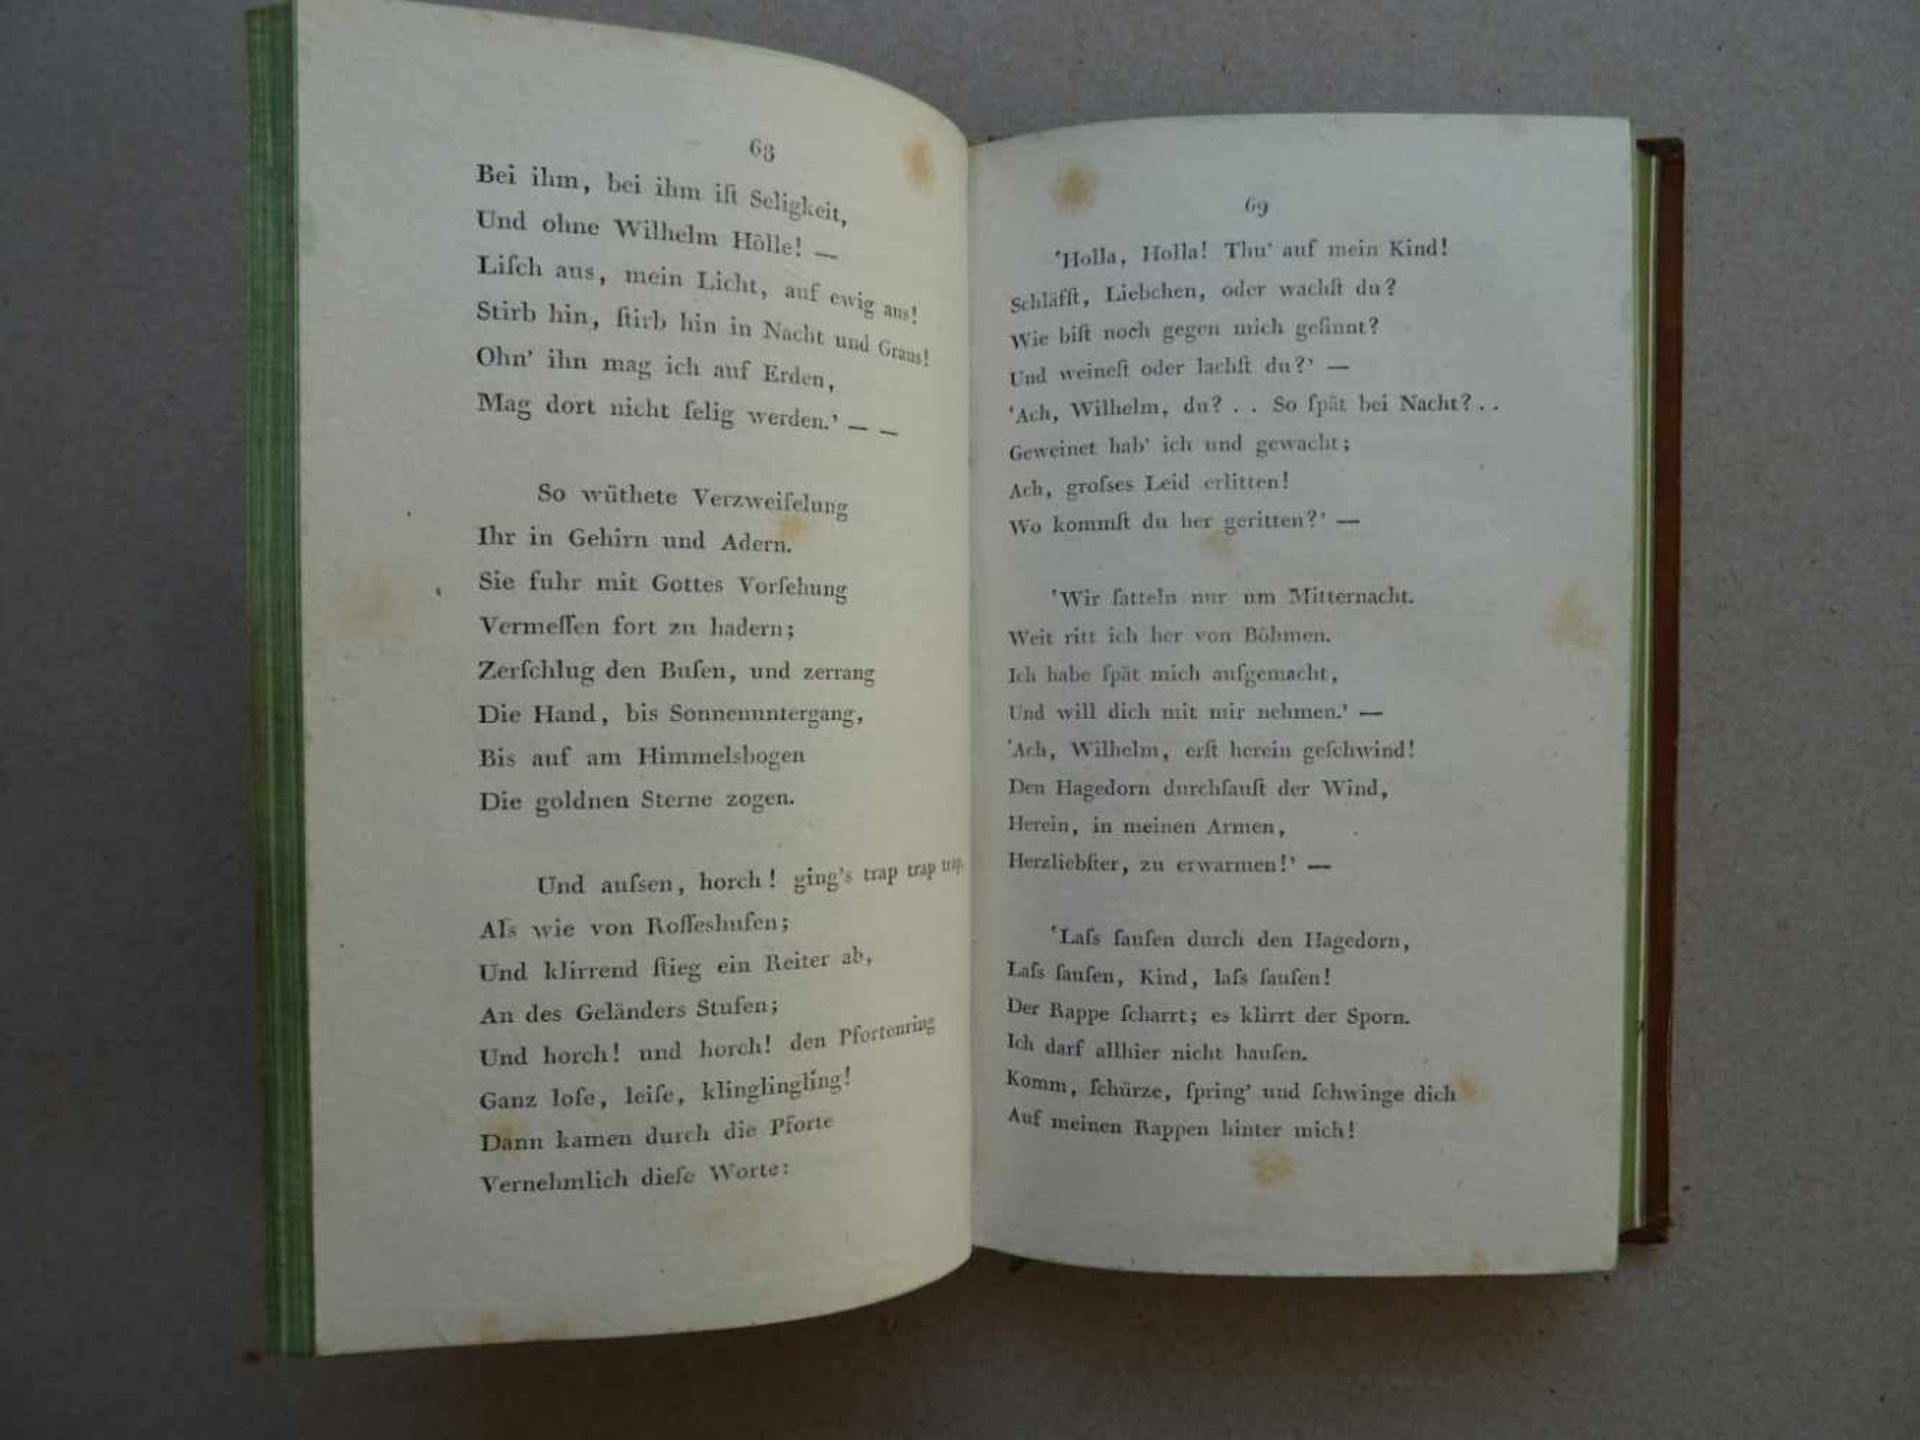 Bürger, G.A.Sämmtliche Schriften. Hrsg. v. K. Reinhard. 4 Bde. Göttingen, Dieterich, 1796-1802. - Bild 2 aus 3